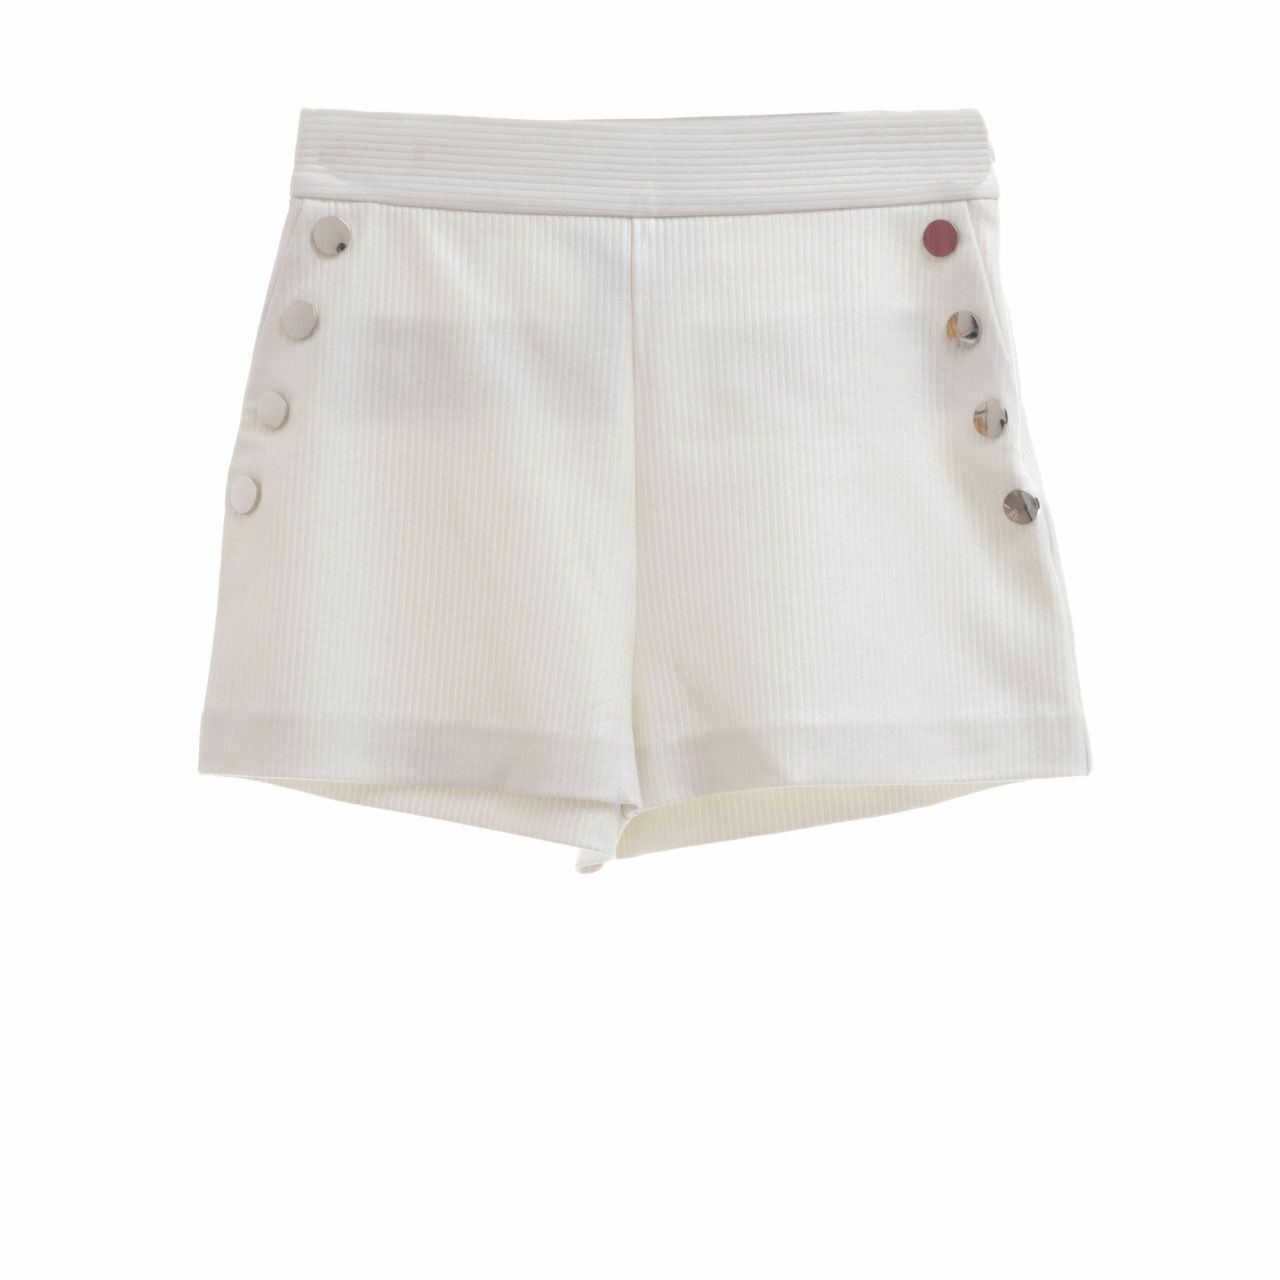 Jaspal White Shorts Pants 